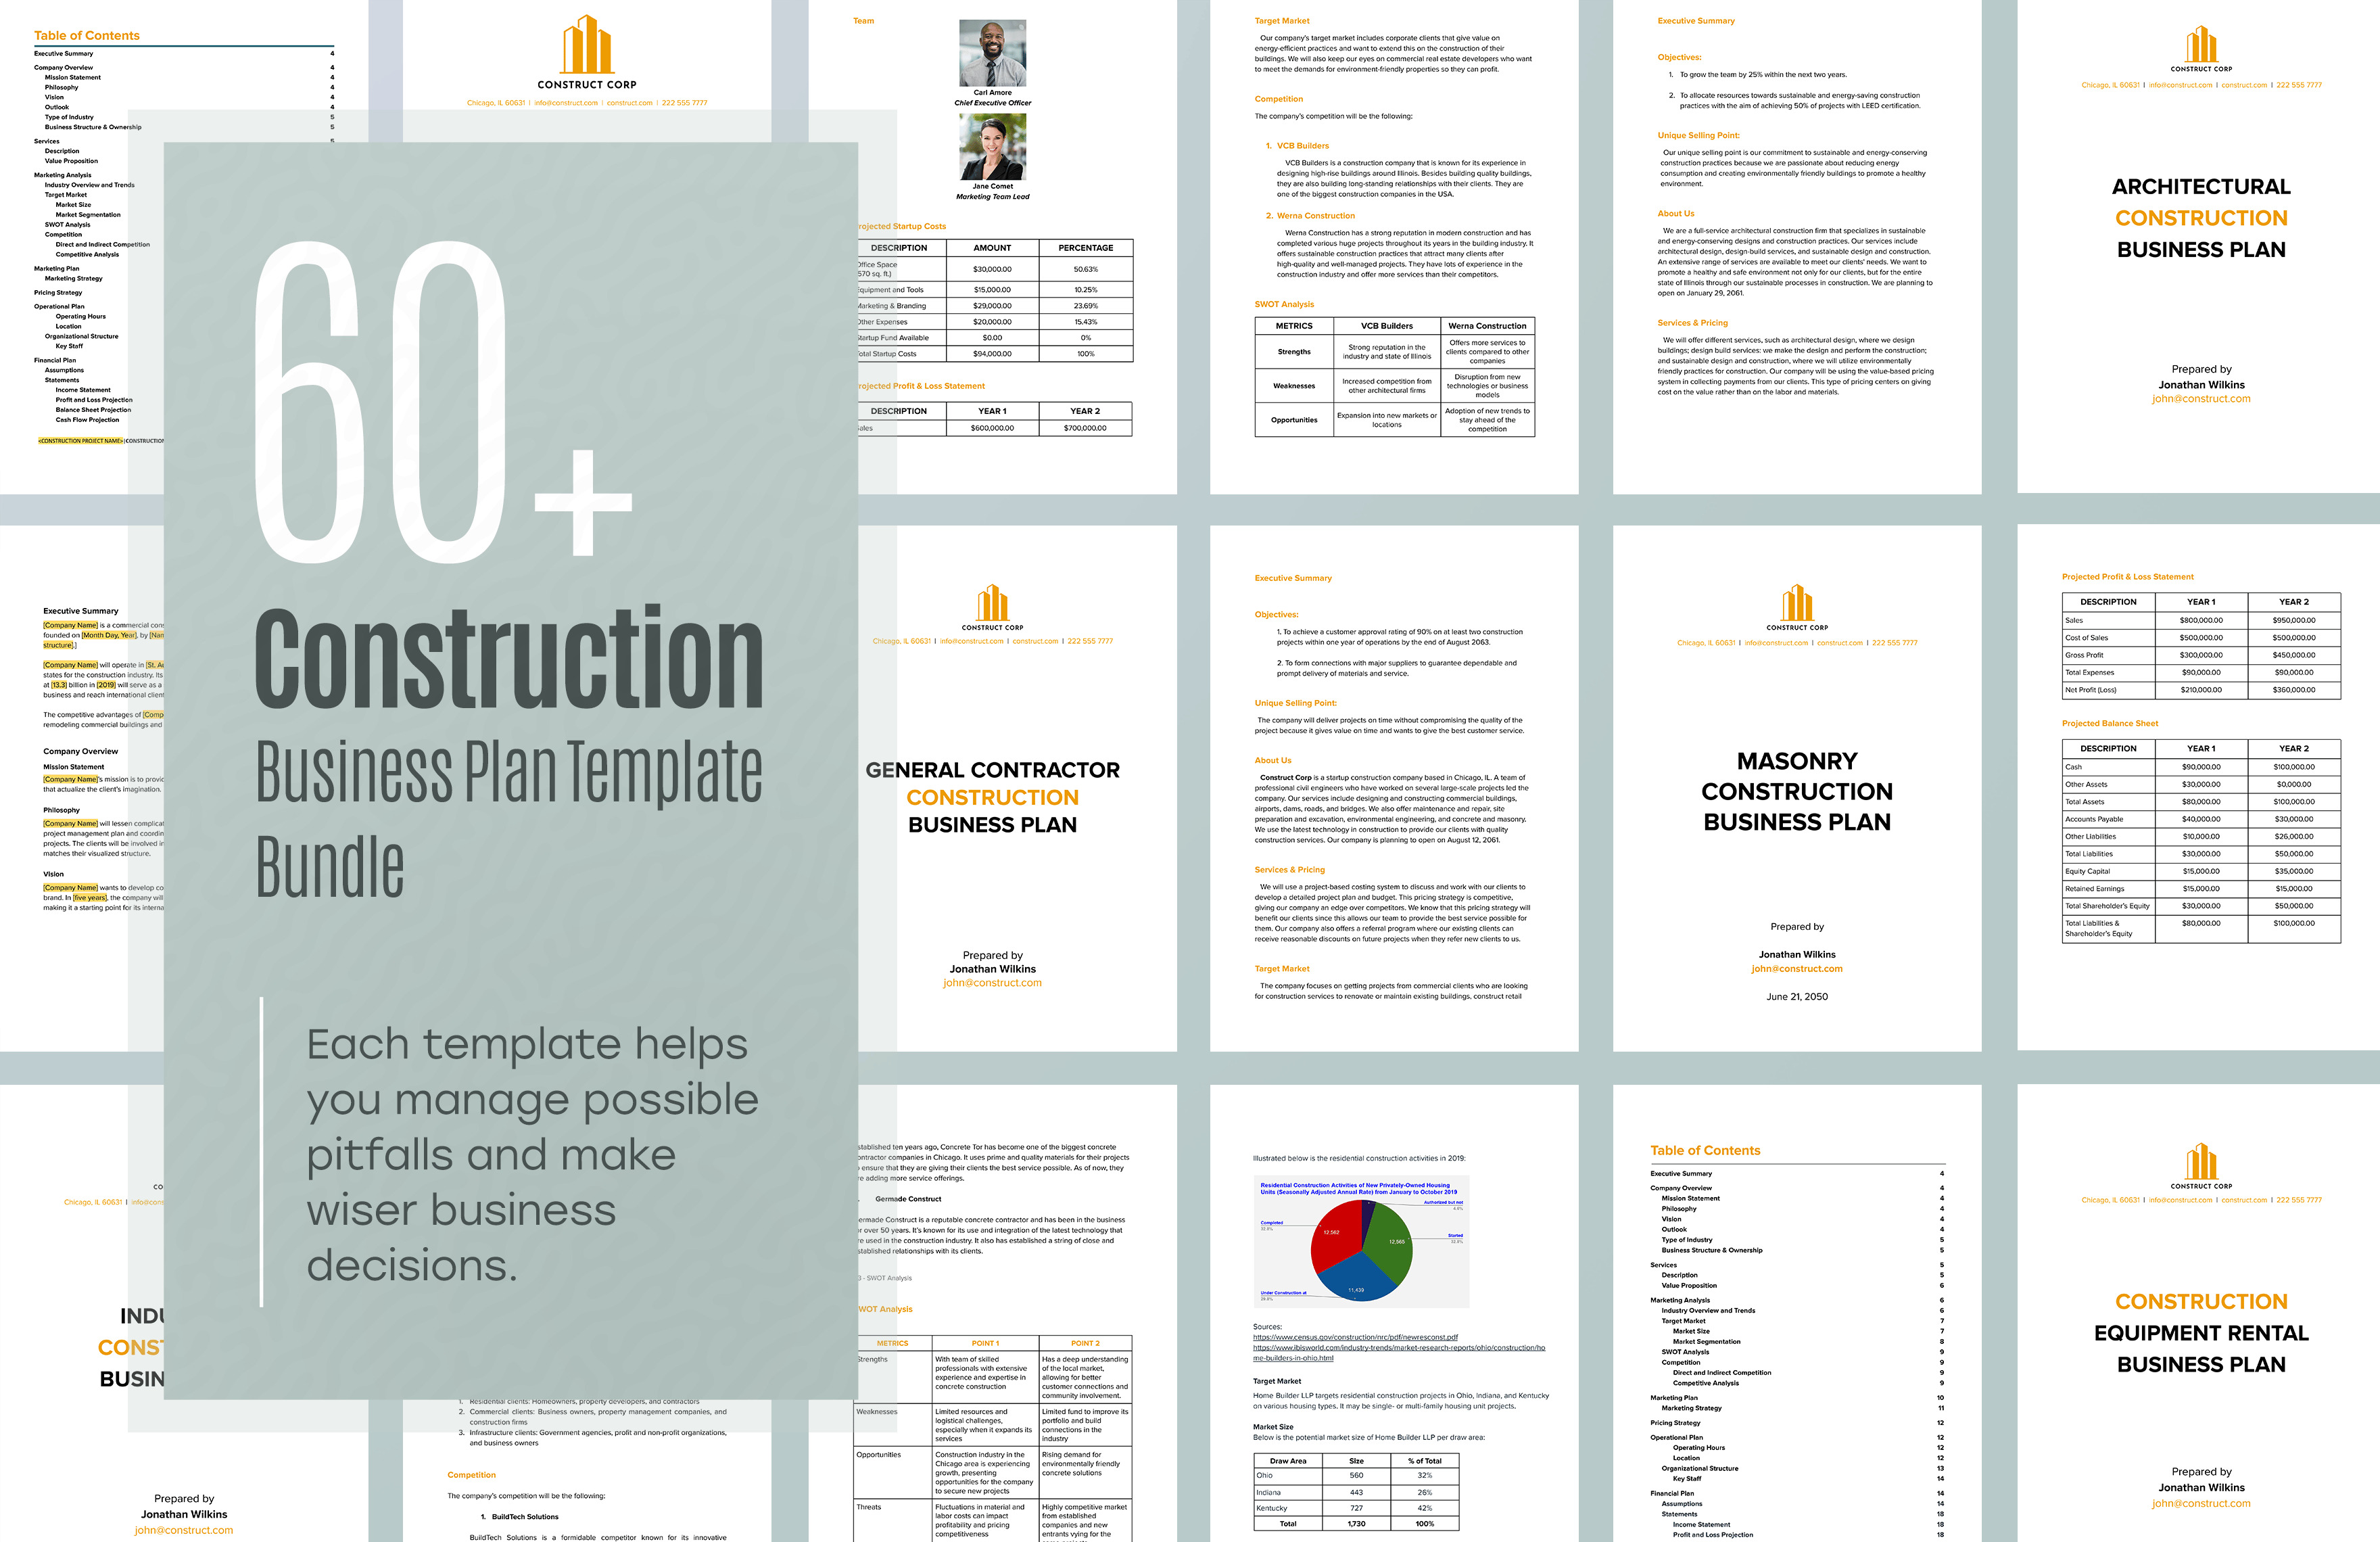 0 construction business plan template bundle